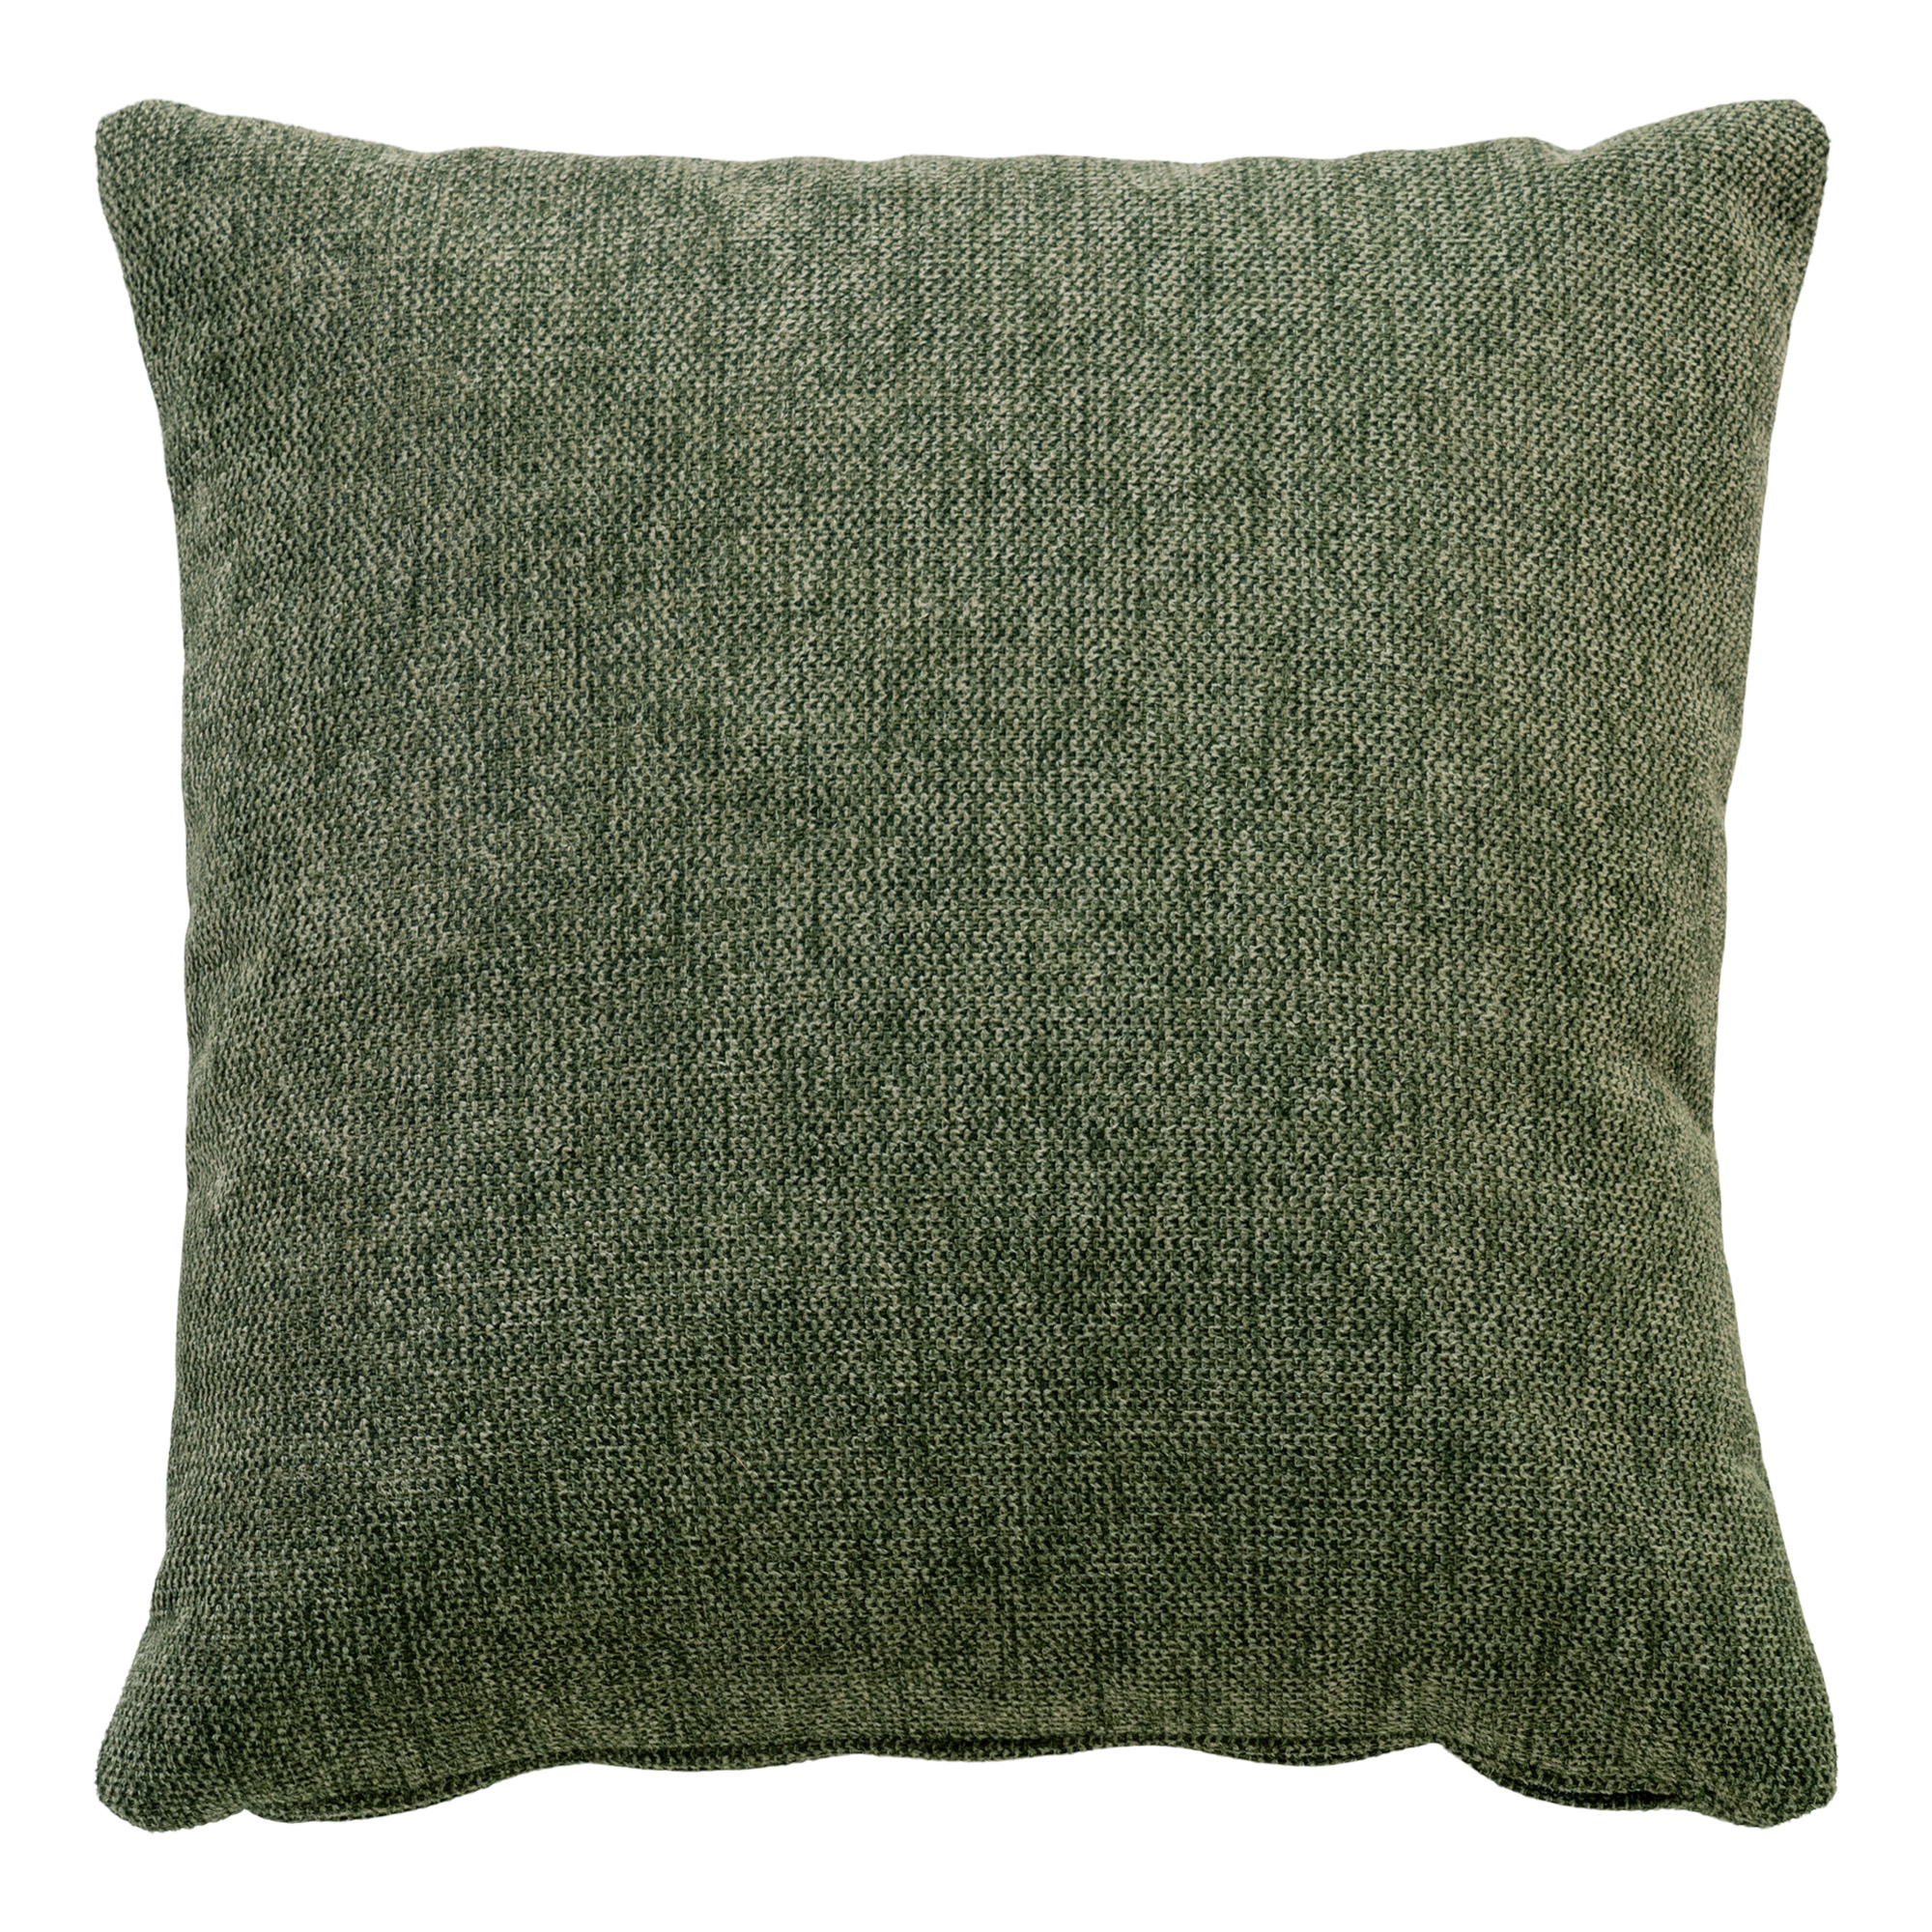 Lido Cushion - Cushion in olive green HN1020